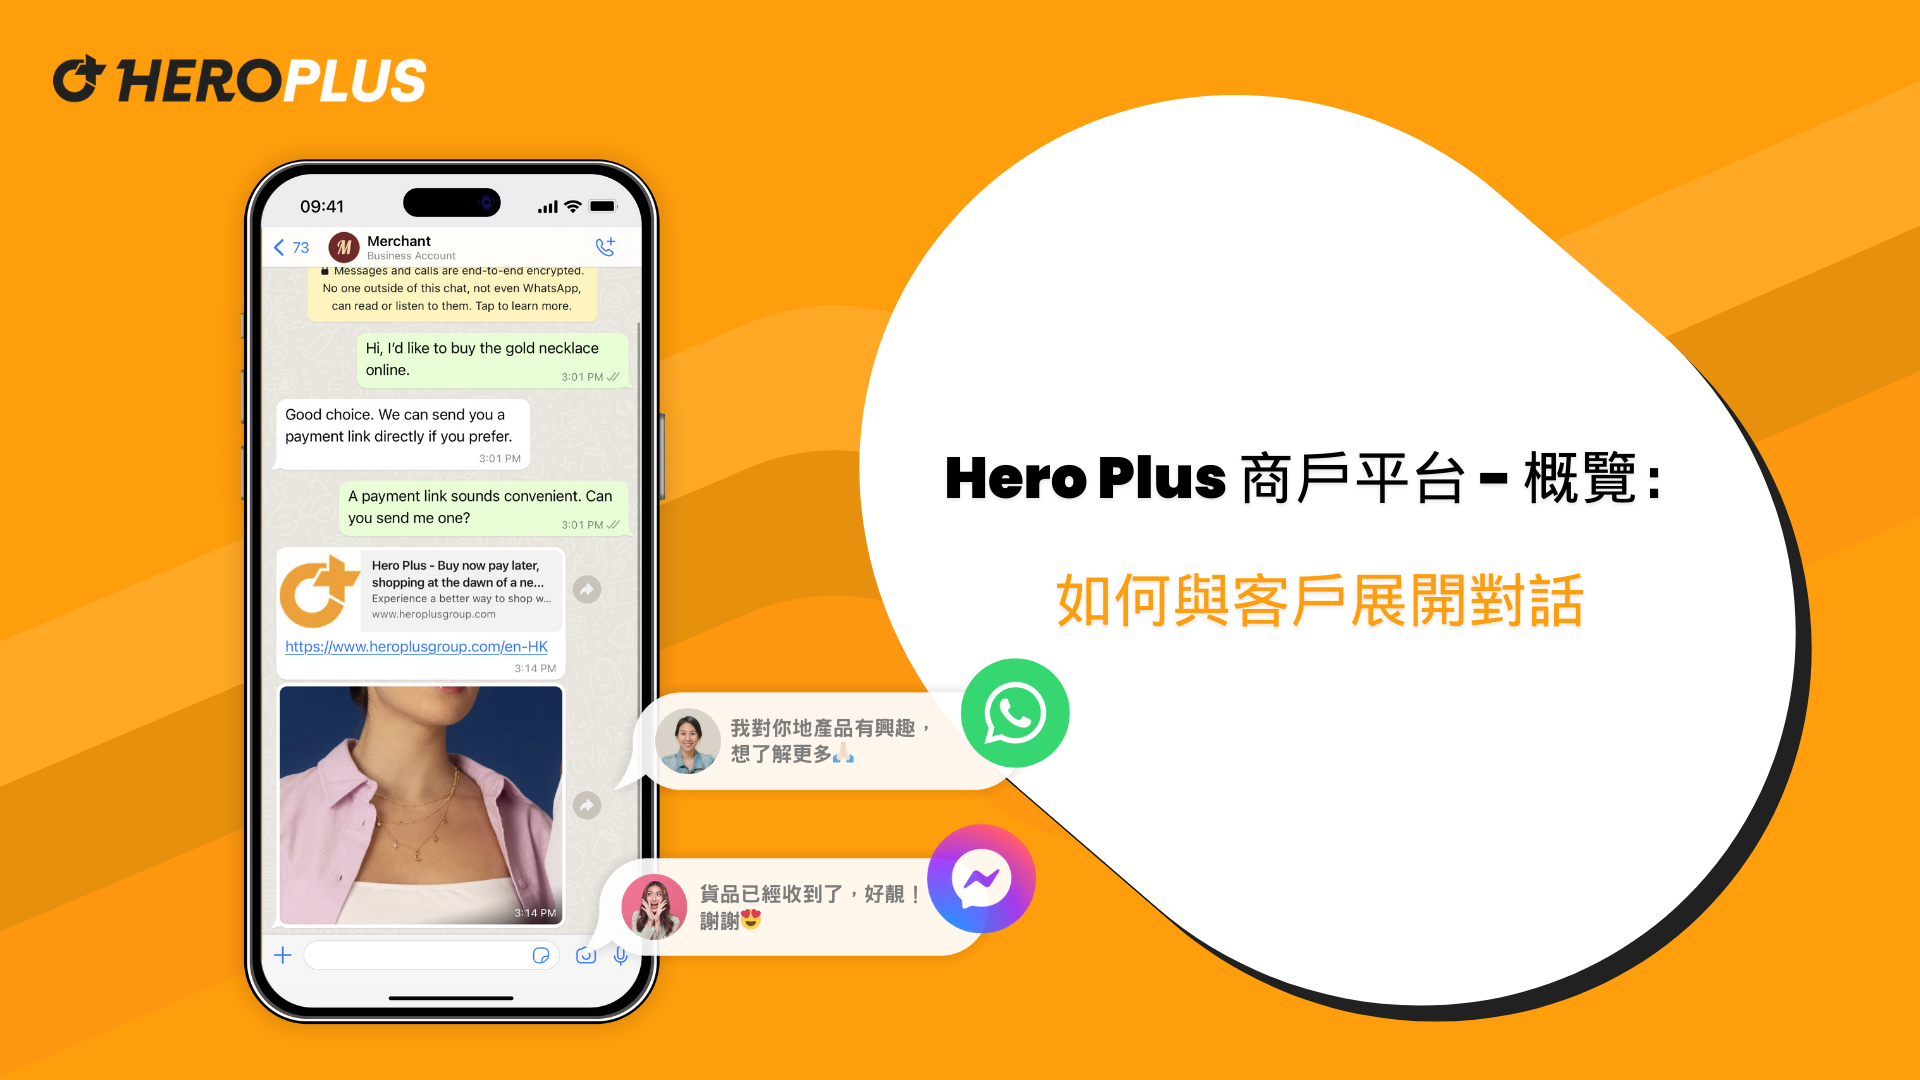 Hero Plus 商戶平台 - 概覽：如何與客戶展開對話